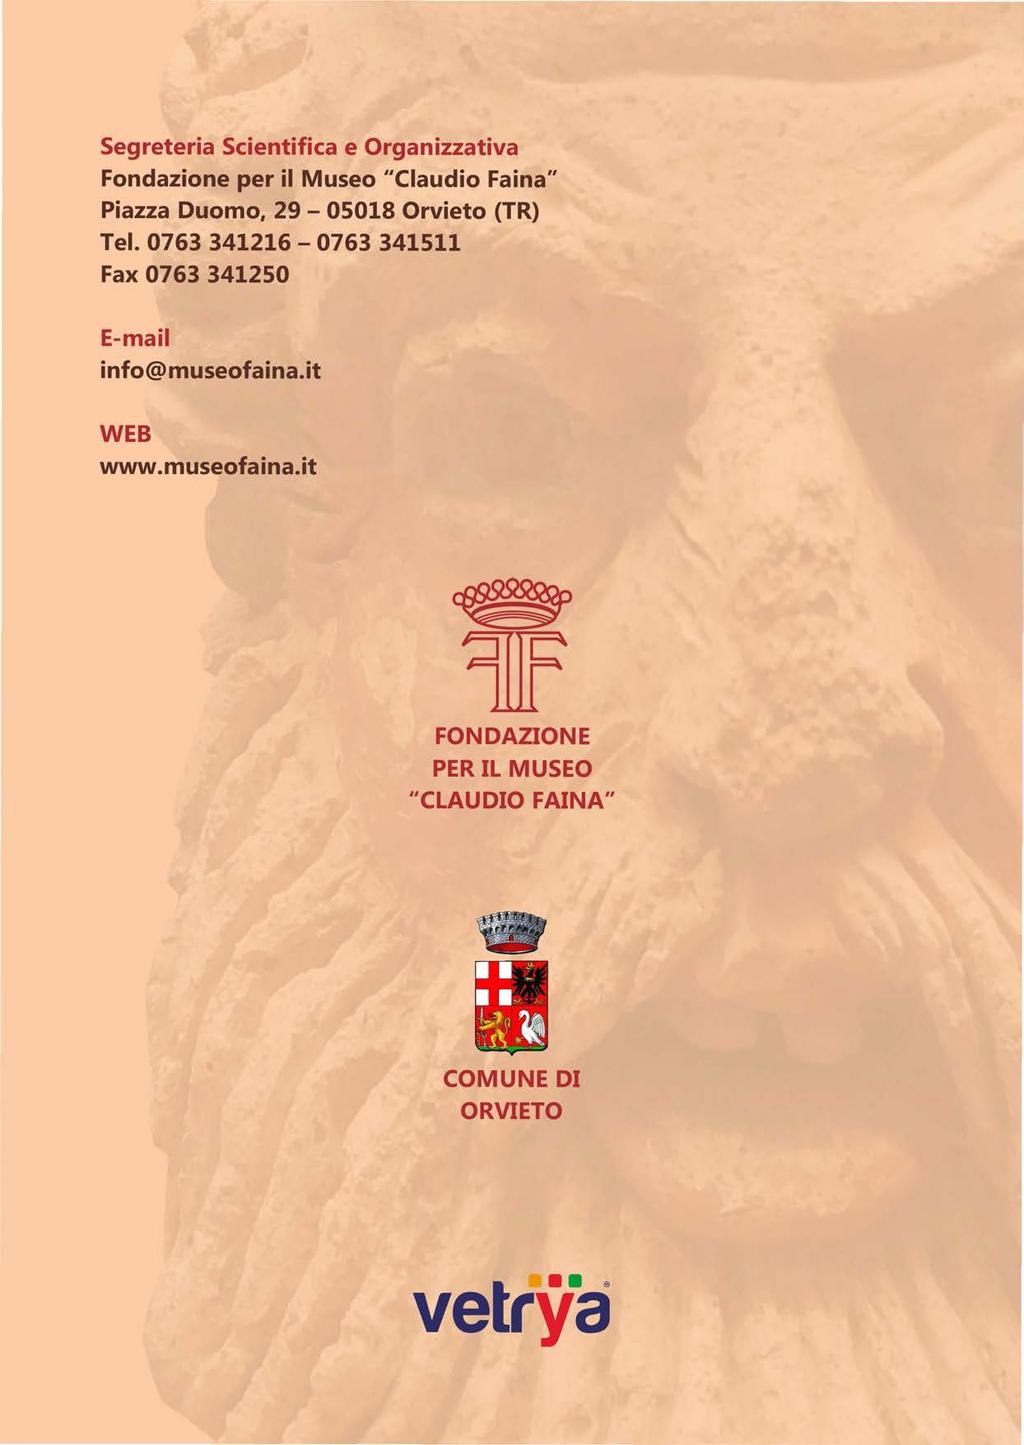 Segreteria Scientifica e Organizzativa Fondazione per il Museo "Claudio Faina" Piazza Duomo, 29-05018 Orvieto (TR) Tel.